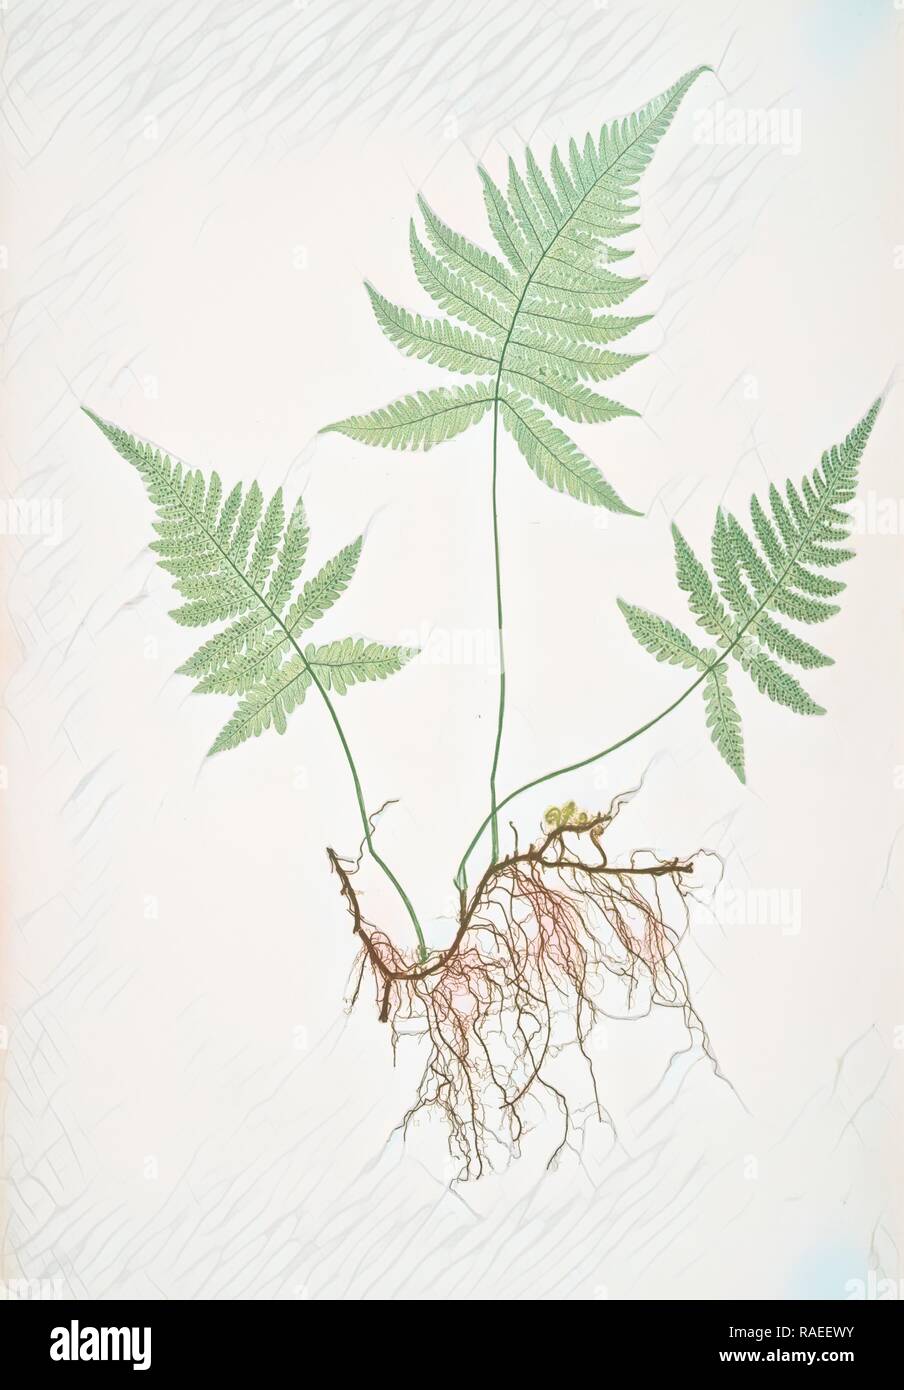 Polypodium Phegopteris. La montagne, le polypode fougère ou hêtre, Bradbury, Henry Riley (1821-1887), (illustrateur), 1857 repensé Banque D'Images